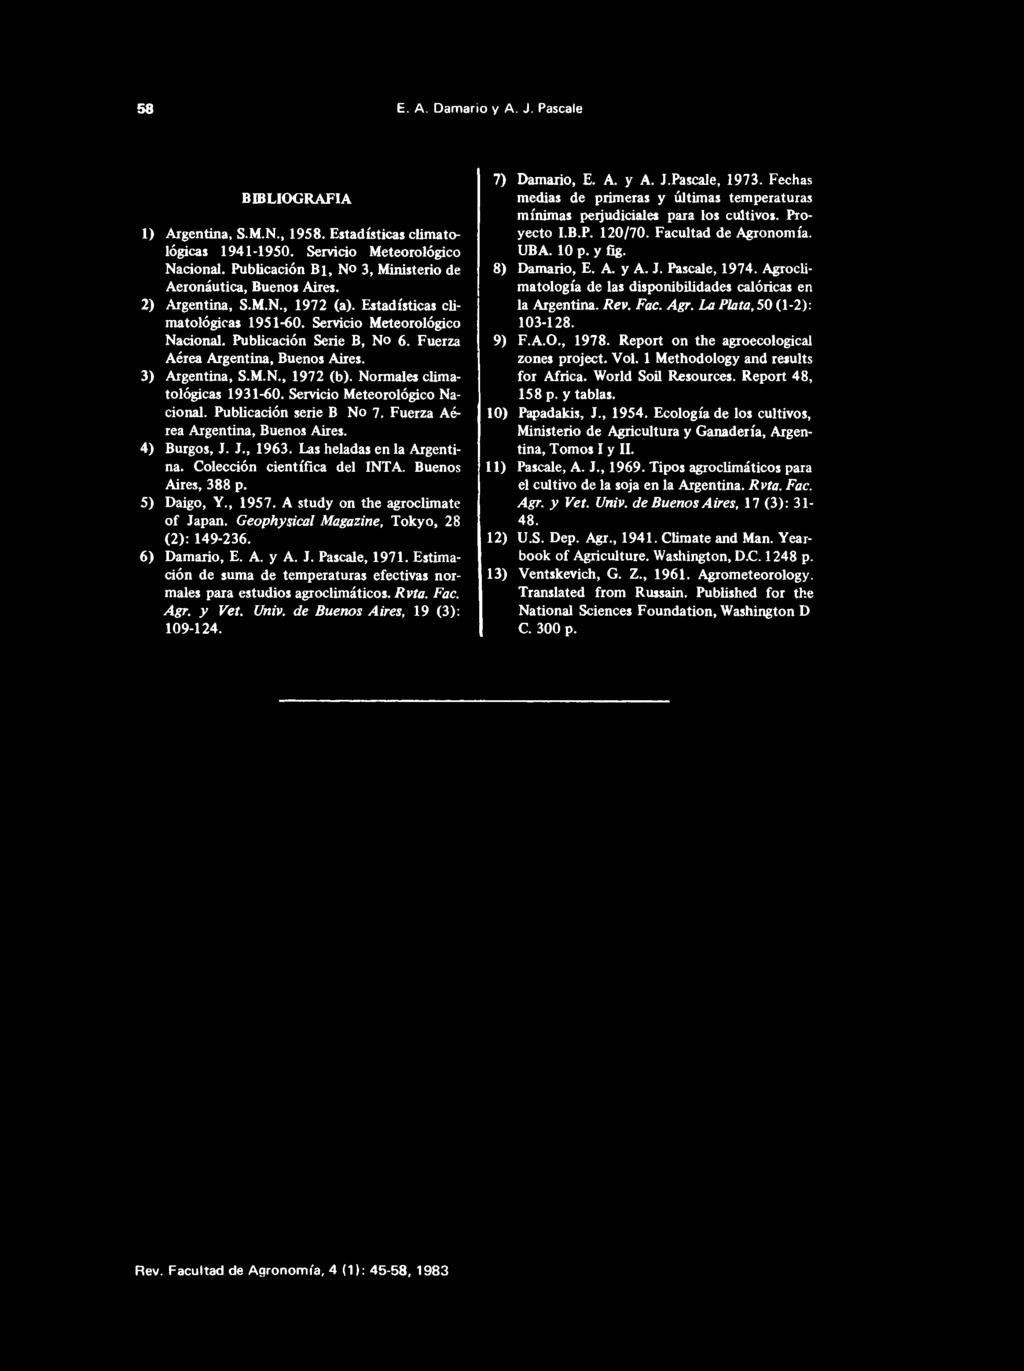 Geophysical Magazine, Tokyo, 28 (2): 149-236. 6) Damario, E. A. y A. J. Pascale, 1971. Estimación de suma de temperaturas efectivas normales para estudios agroclimáticos. Rvta. Fac. Agr. y Vet. Univ.